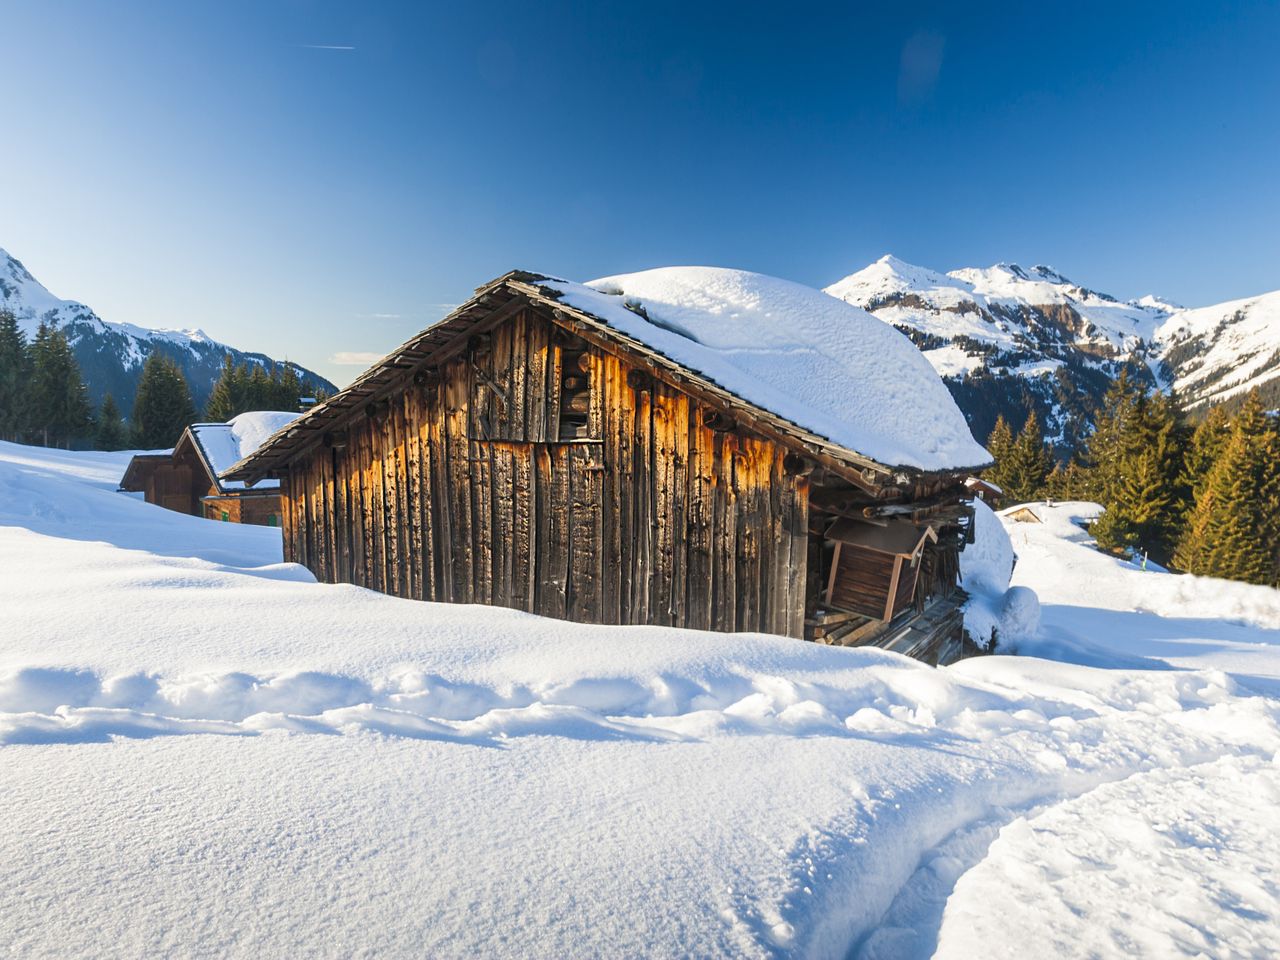 2 Tage Wellness & Natur: Lech am Arlberg genießen